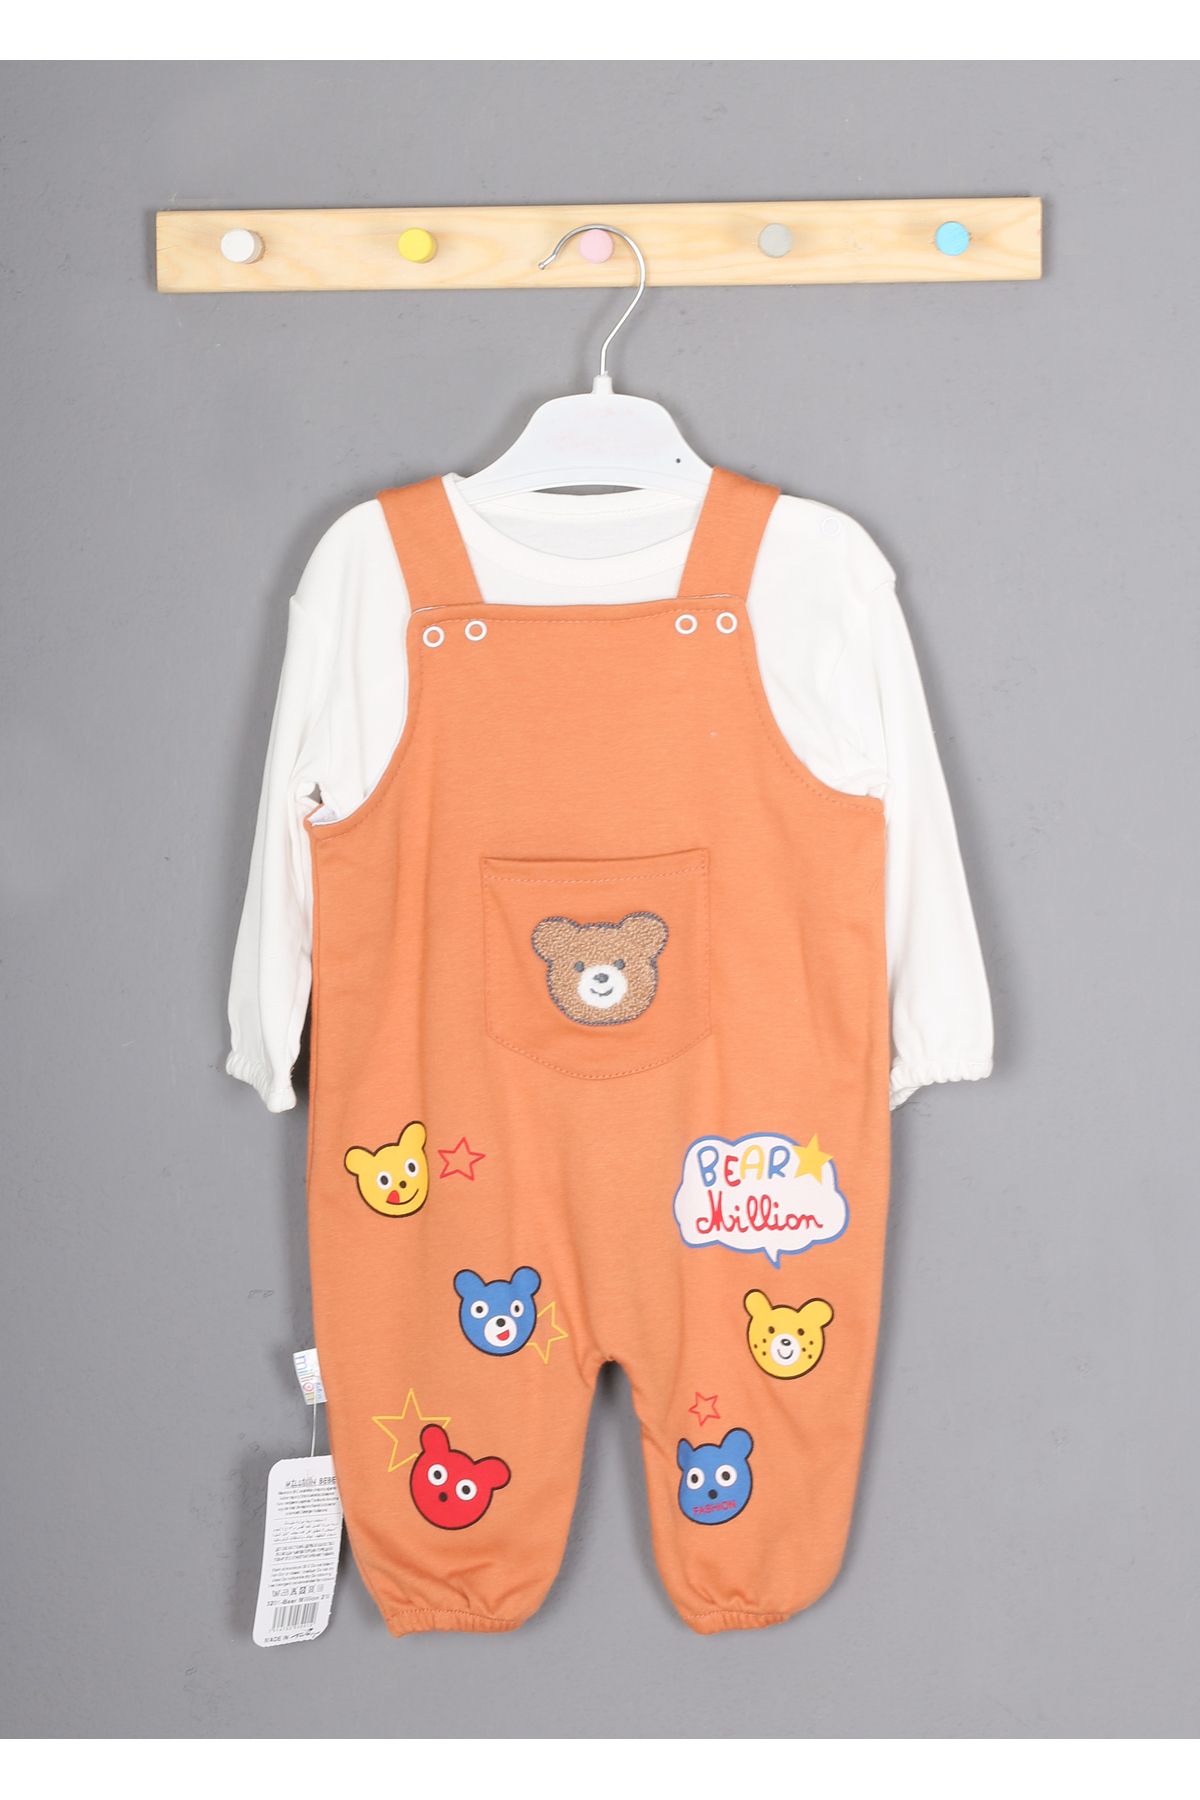 MİLLİON BEBE Sevimli Ayıcıklar Detaylı Erkek Bebek Takımı Tulumu 3-6-9 Aylık Bebek Elbisesi Kıyafeti